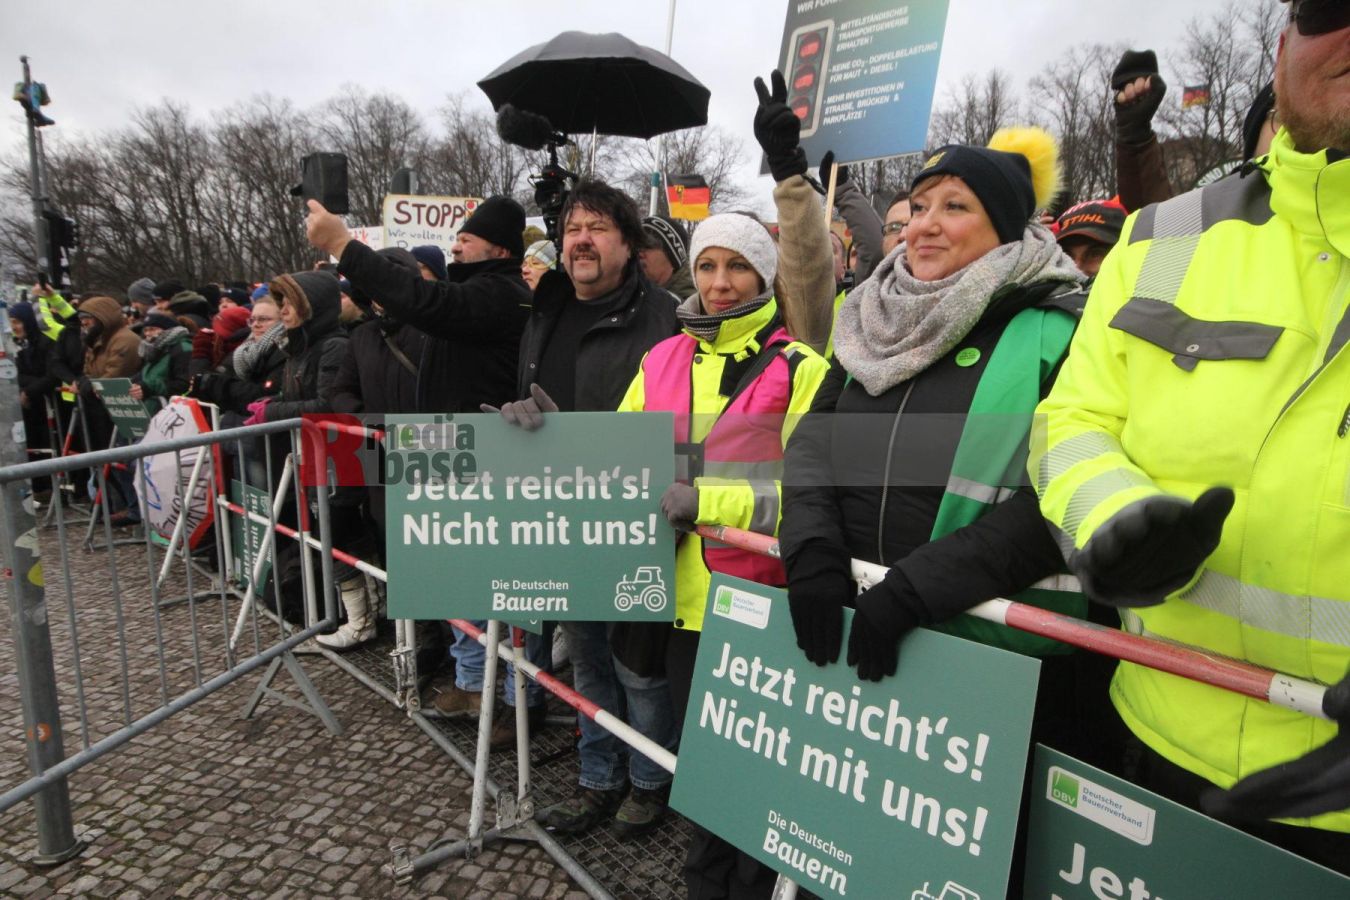 Bauernprotest in Berlin <i>Bild Denner/R-mediabase</i> <br><a href=/confor2/?bld=79005&pst=78995&aid=86&i1=Denner/R-mediabase>Download Bild 79005</a>  <br><a href=/?p=78995>Zum Beitrag 78995</a>